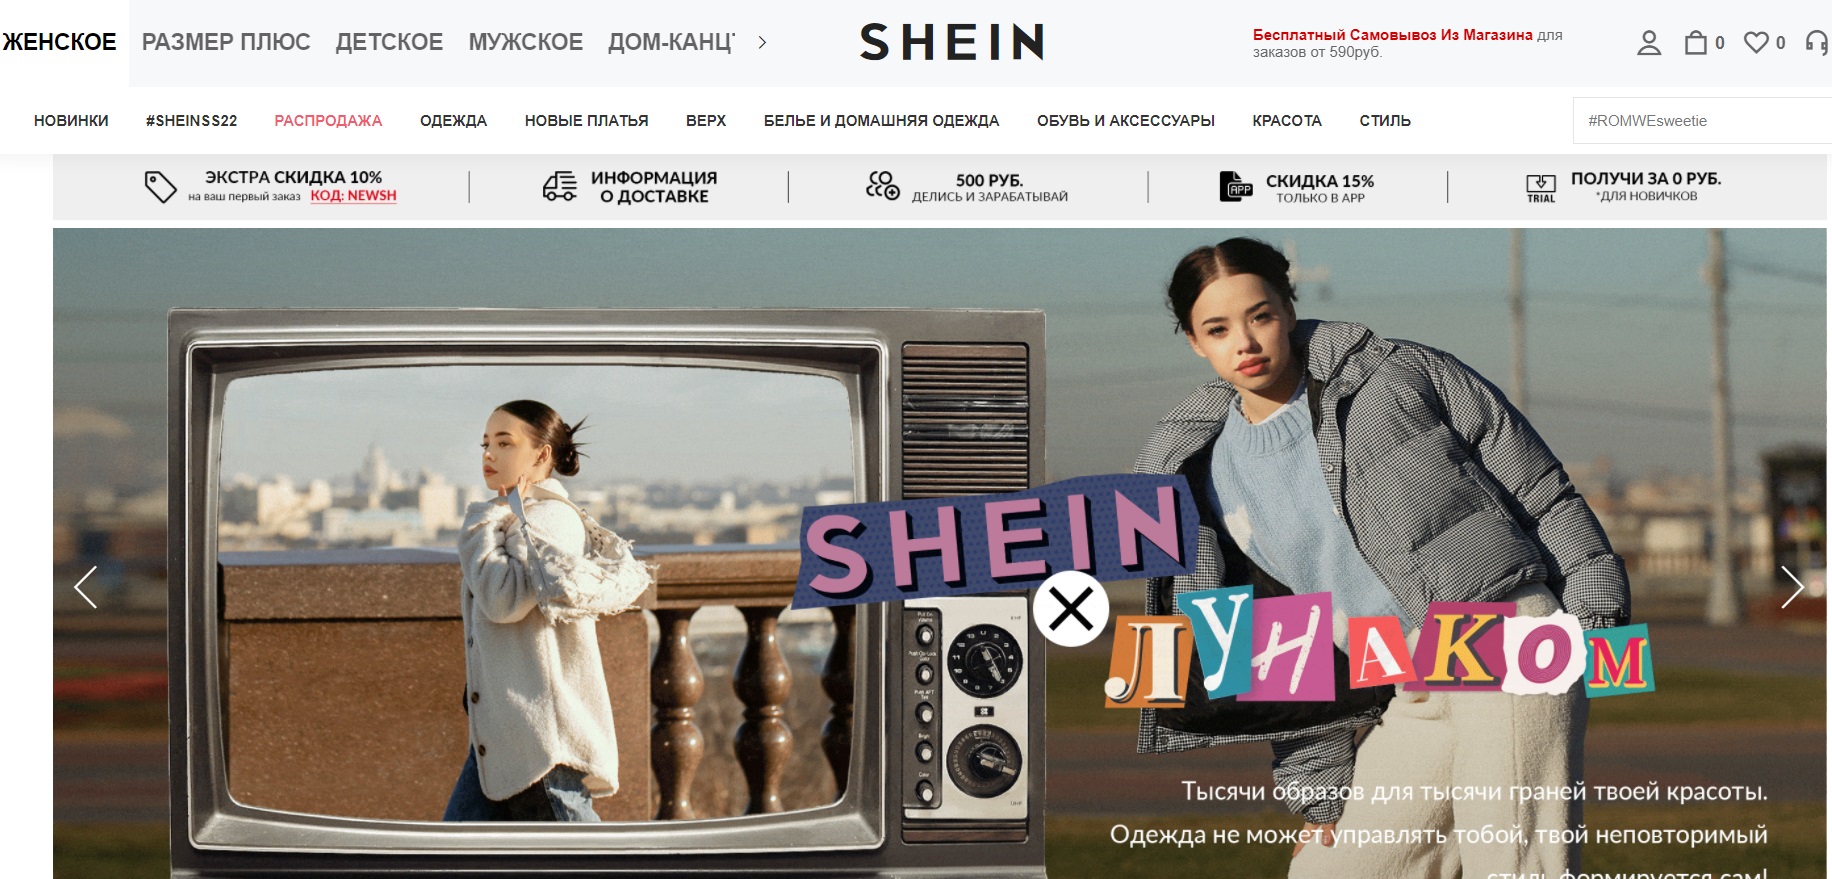 SHEIN официальный сайт интернет-магазина